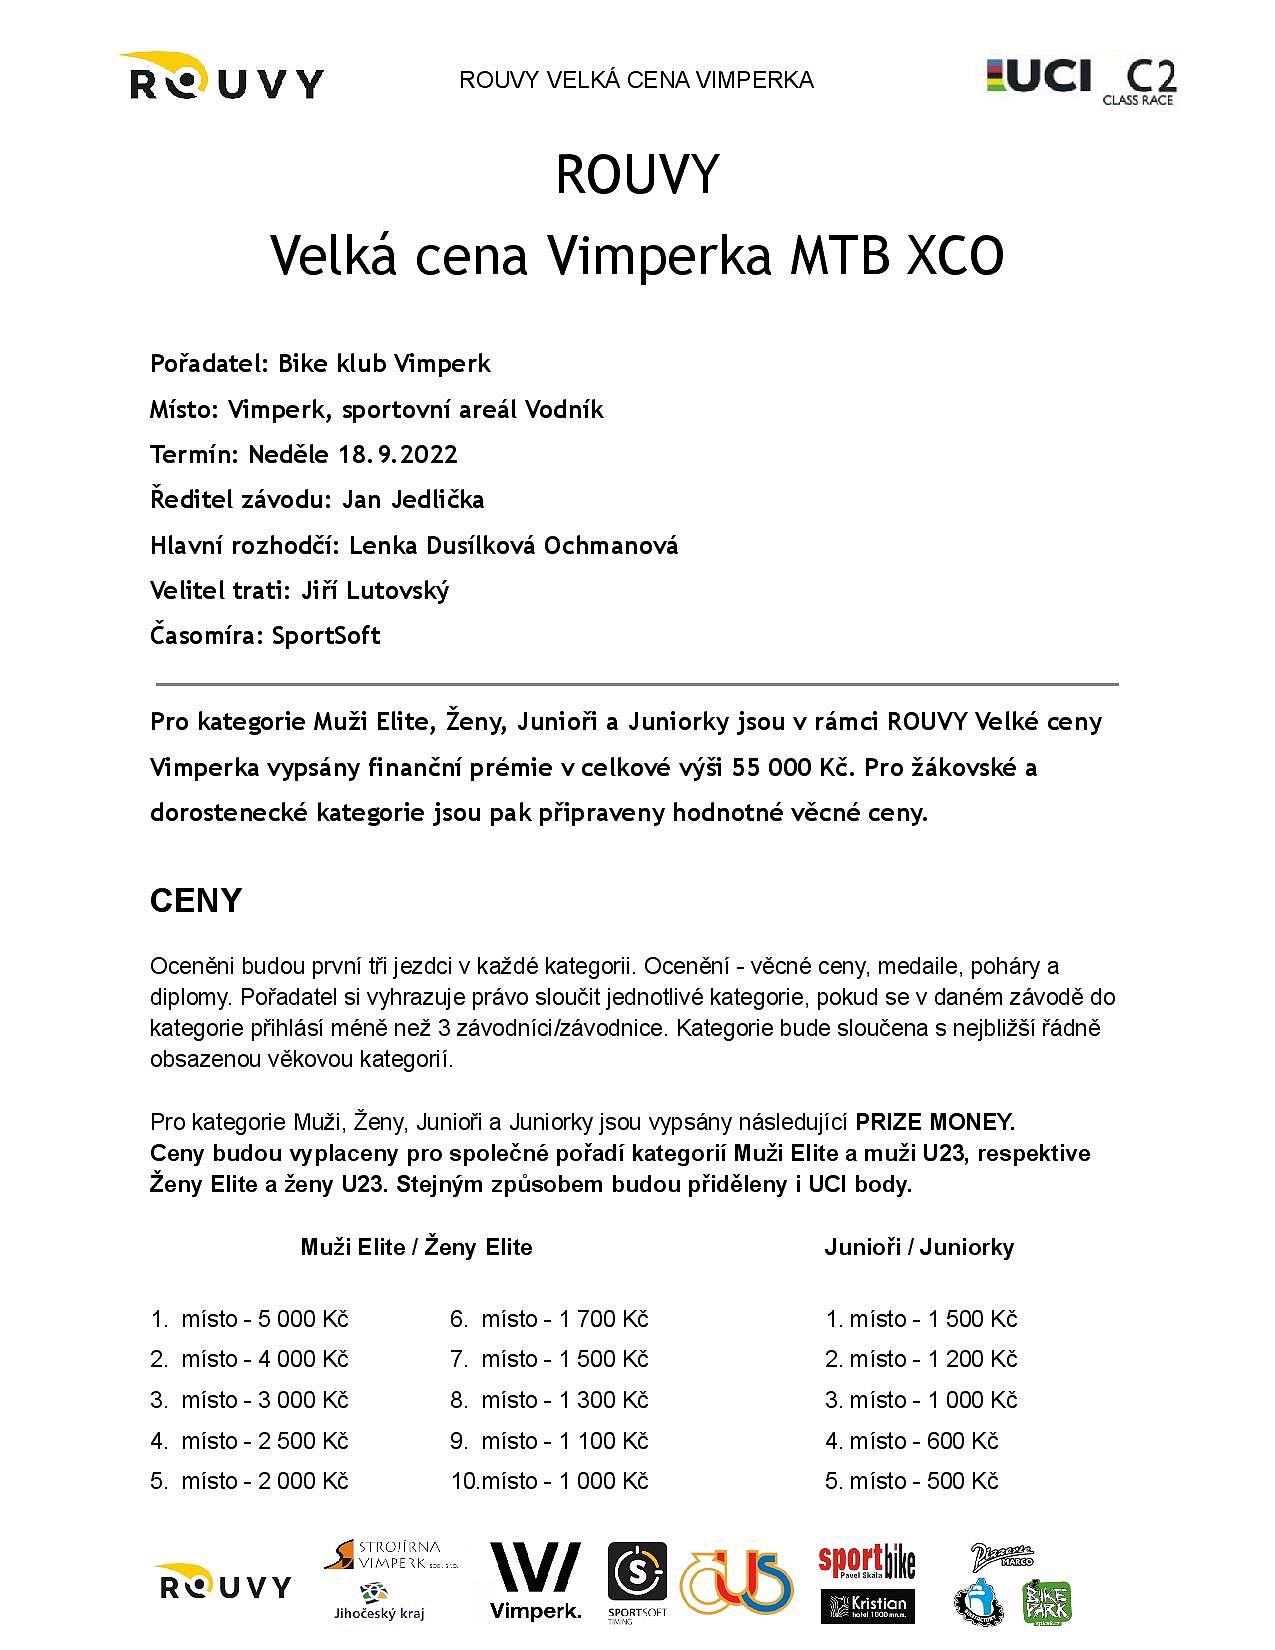 ROUVYVelkaCenaVimperkaMTBXCO-2022-v5-page-001